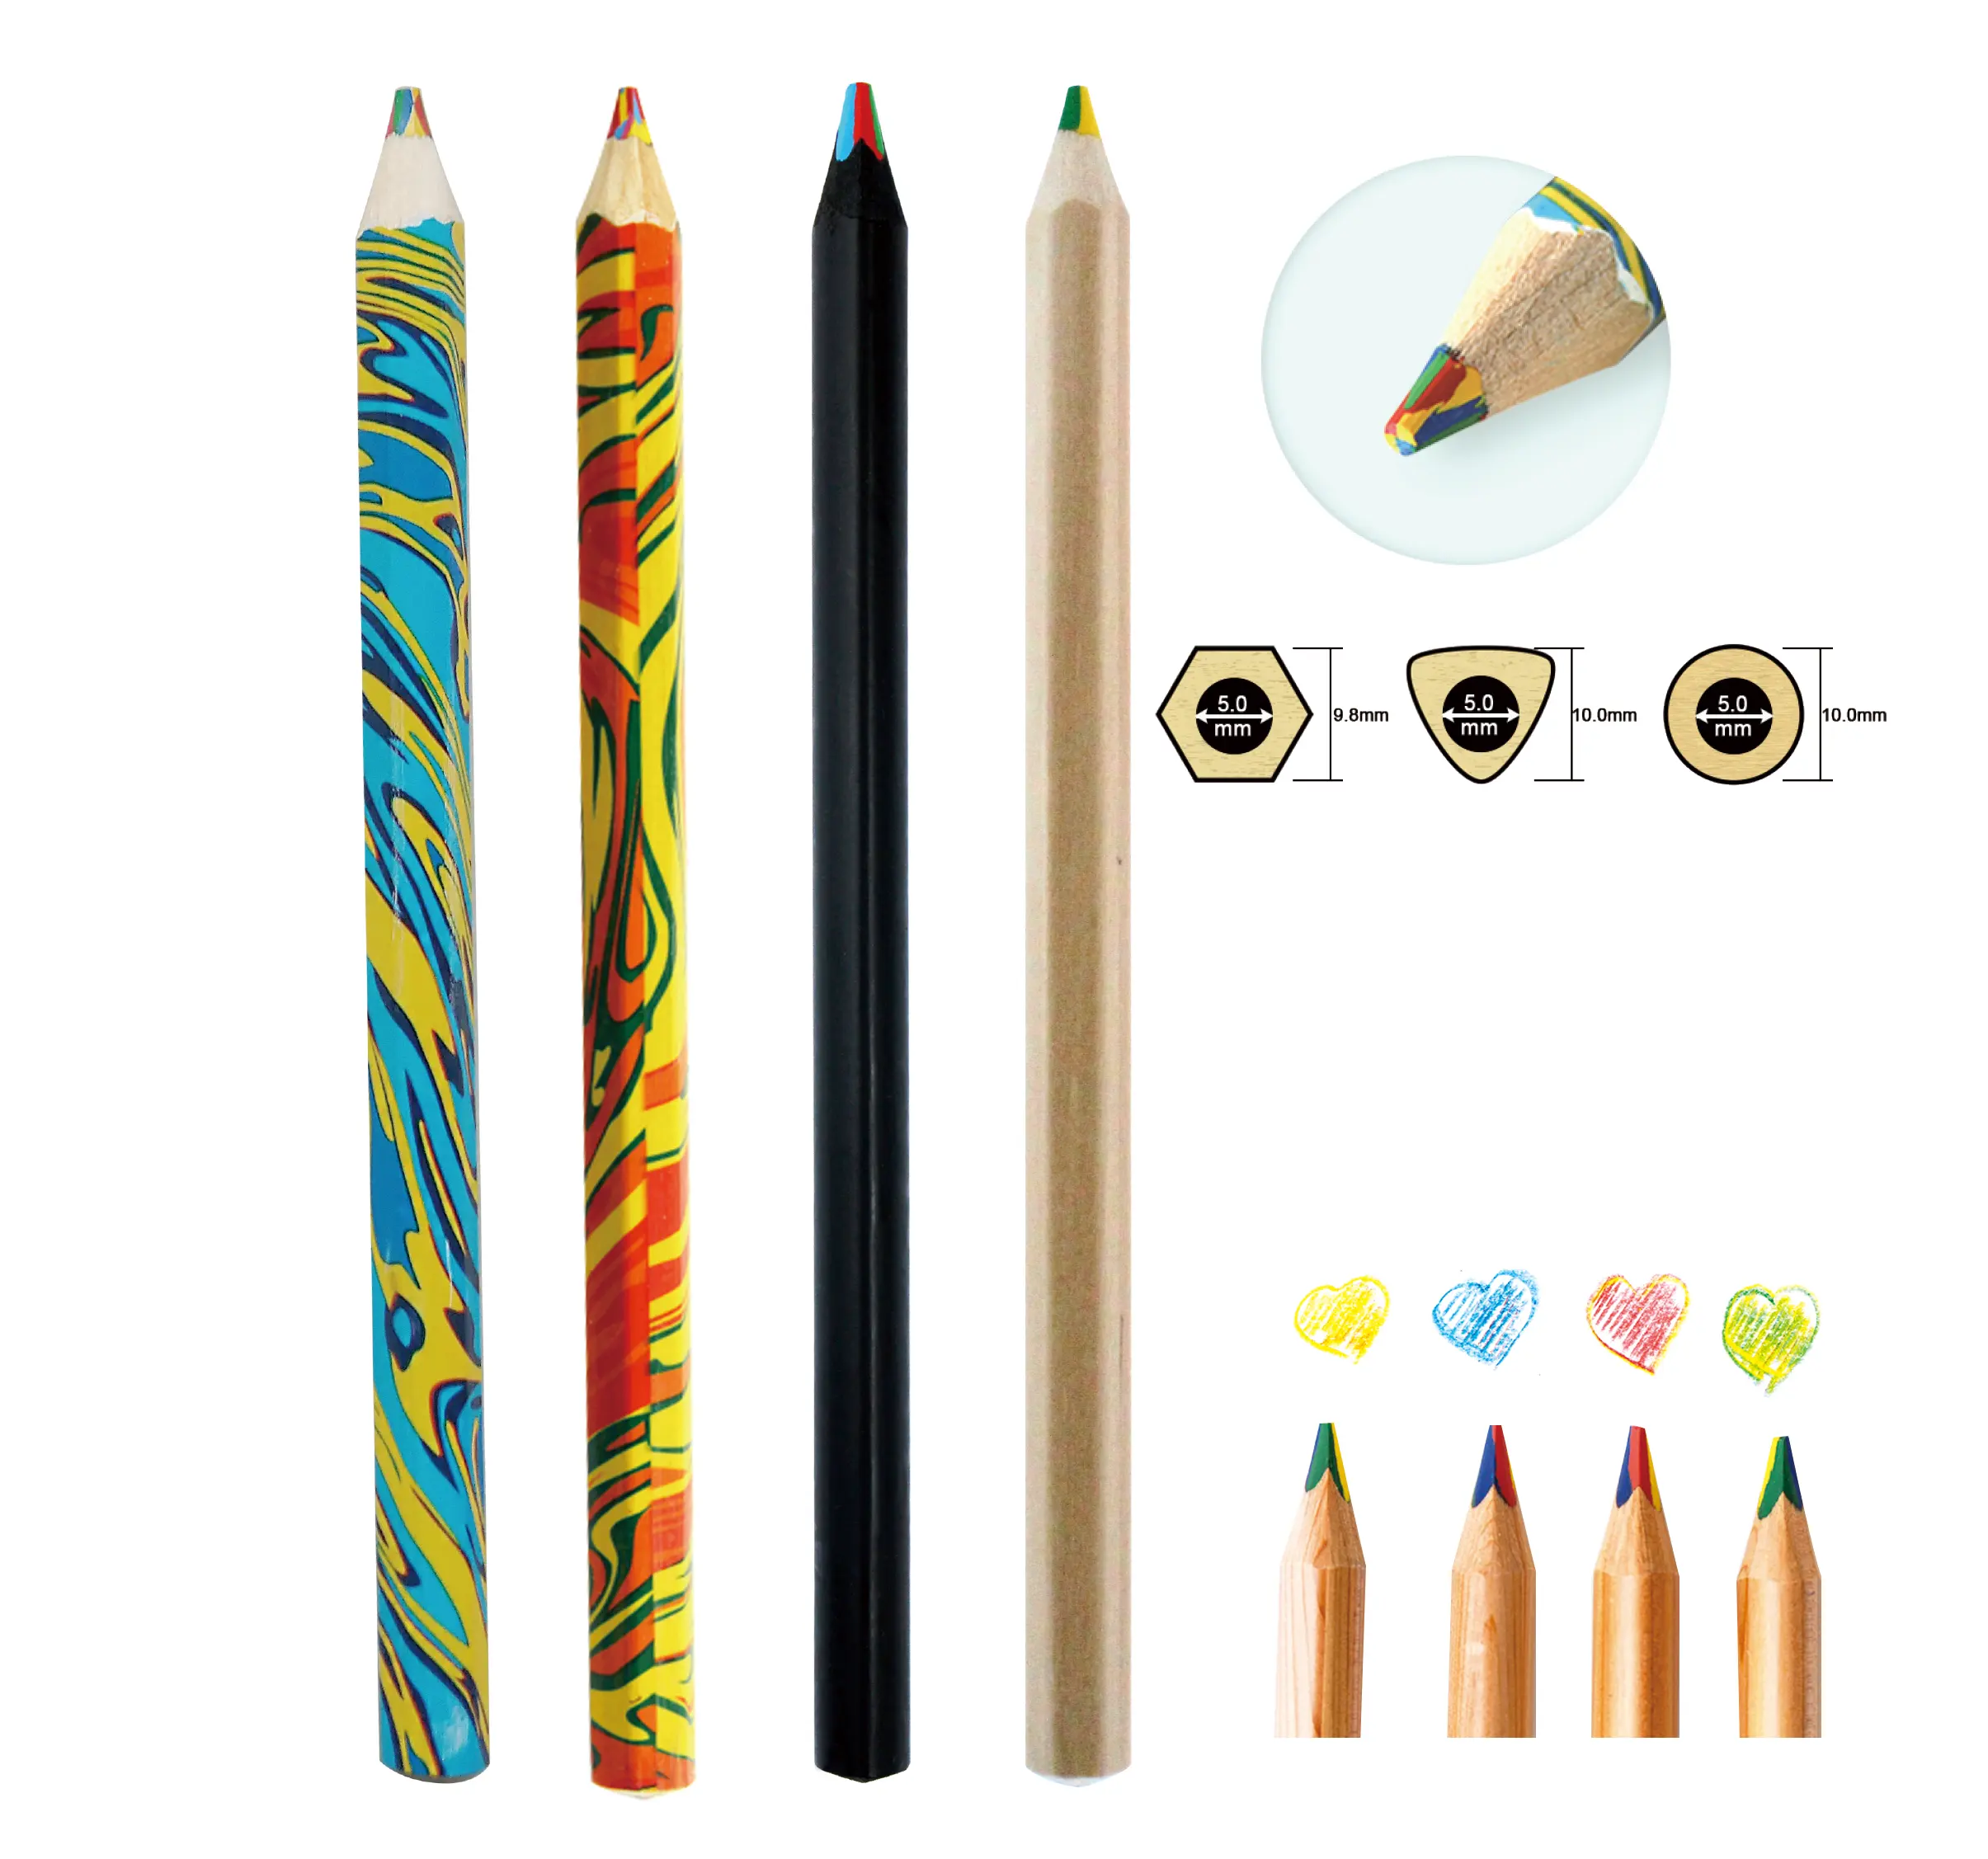 جديد نوع 4 متعددة اللون في 1 الرصاص سداسية شكل الخشب قلم رصاص OEM الليزر شعار 4 اللون في 1 الرصاص قلم رصاص ملون